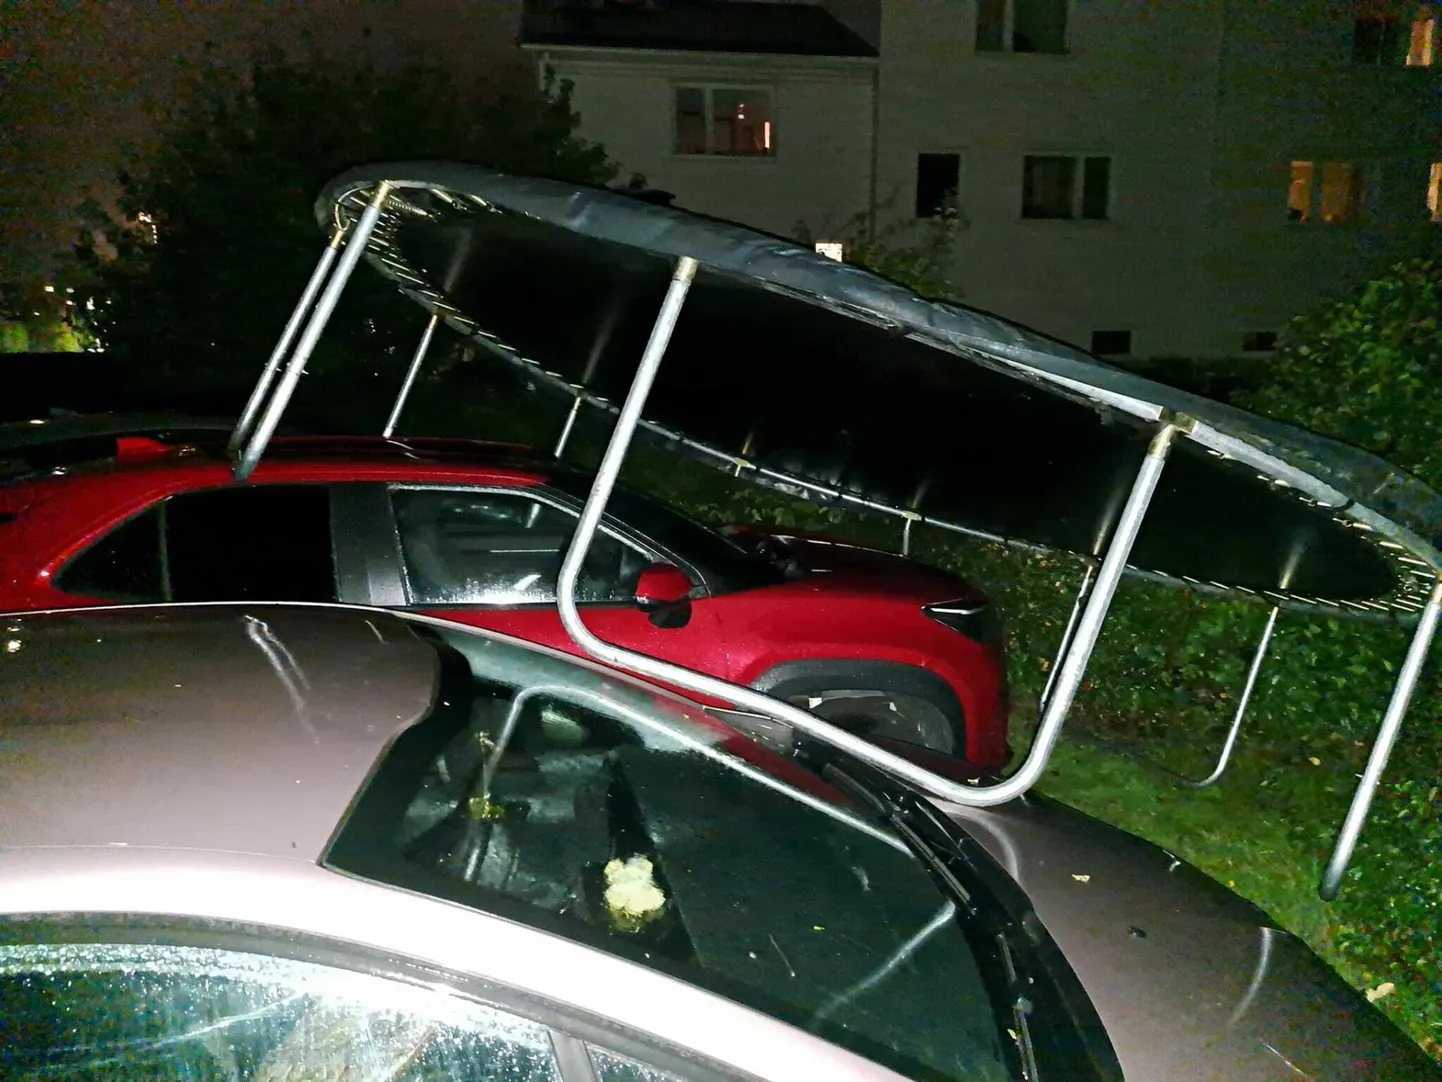 Rakveres võttis Karja tänaval batuut tuule alla ja parkis ennast kahe auto najale.